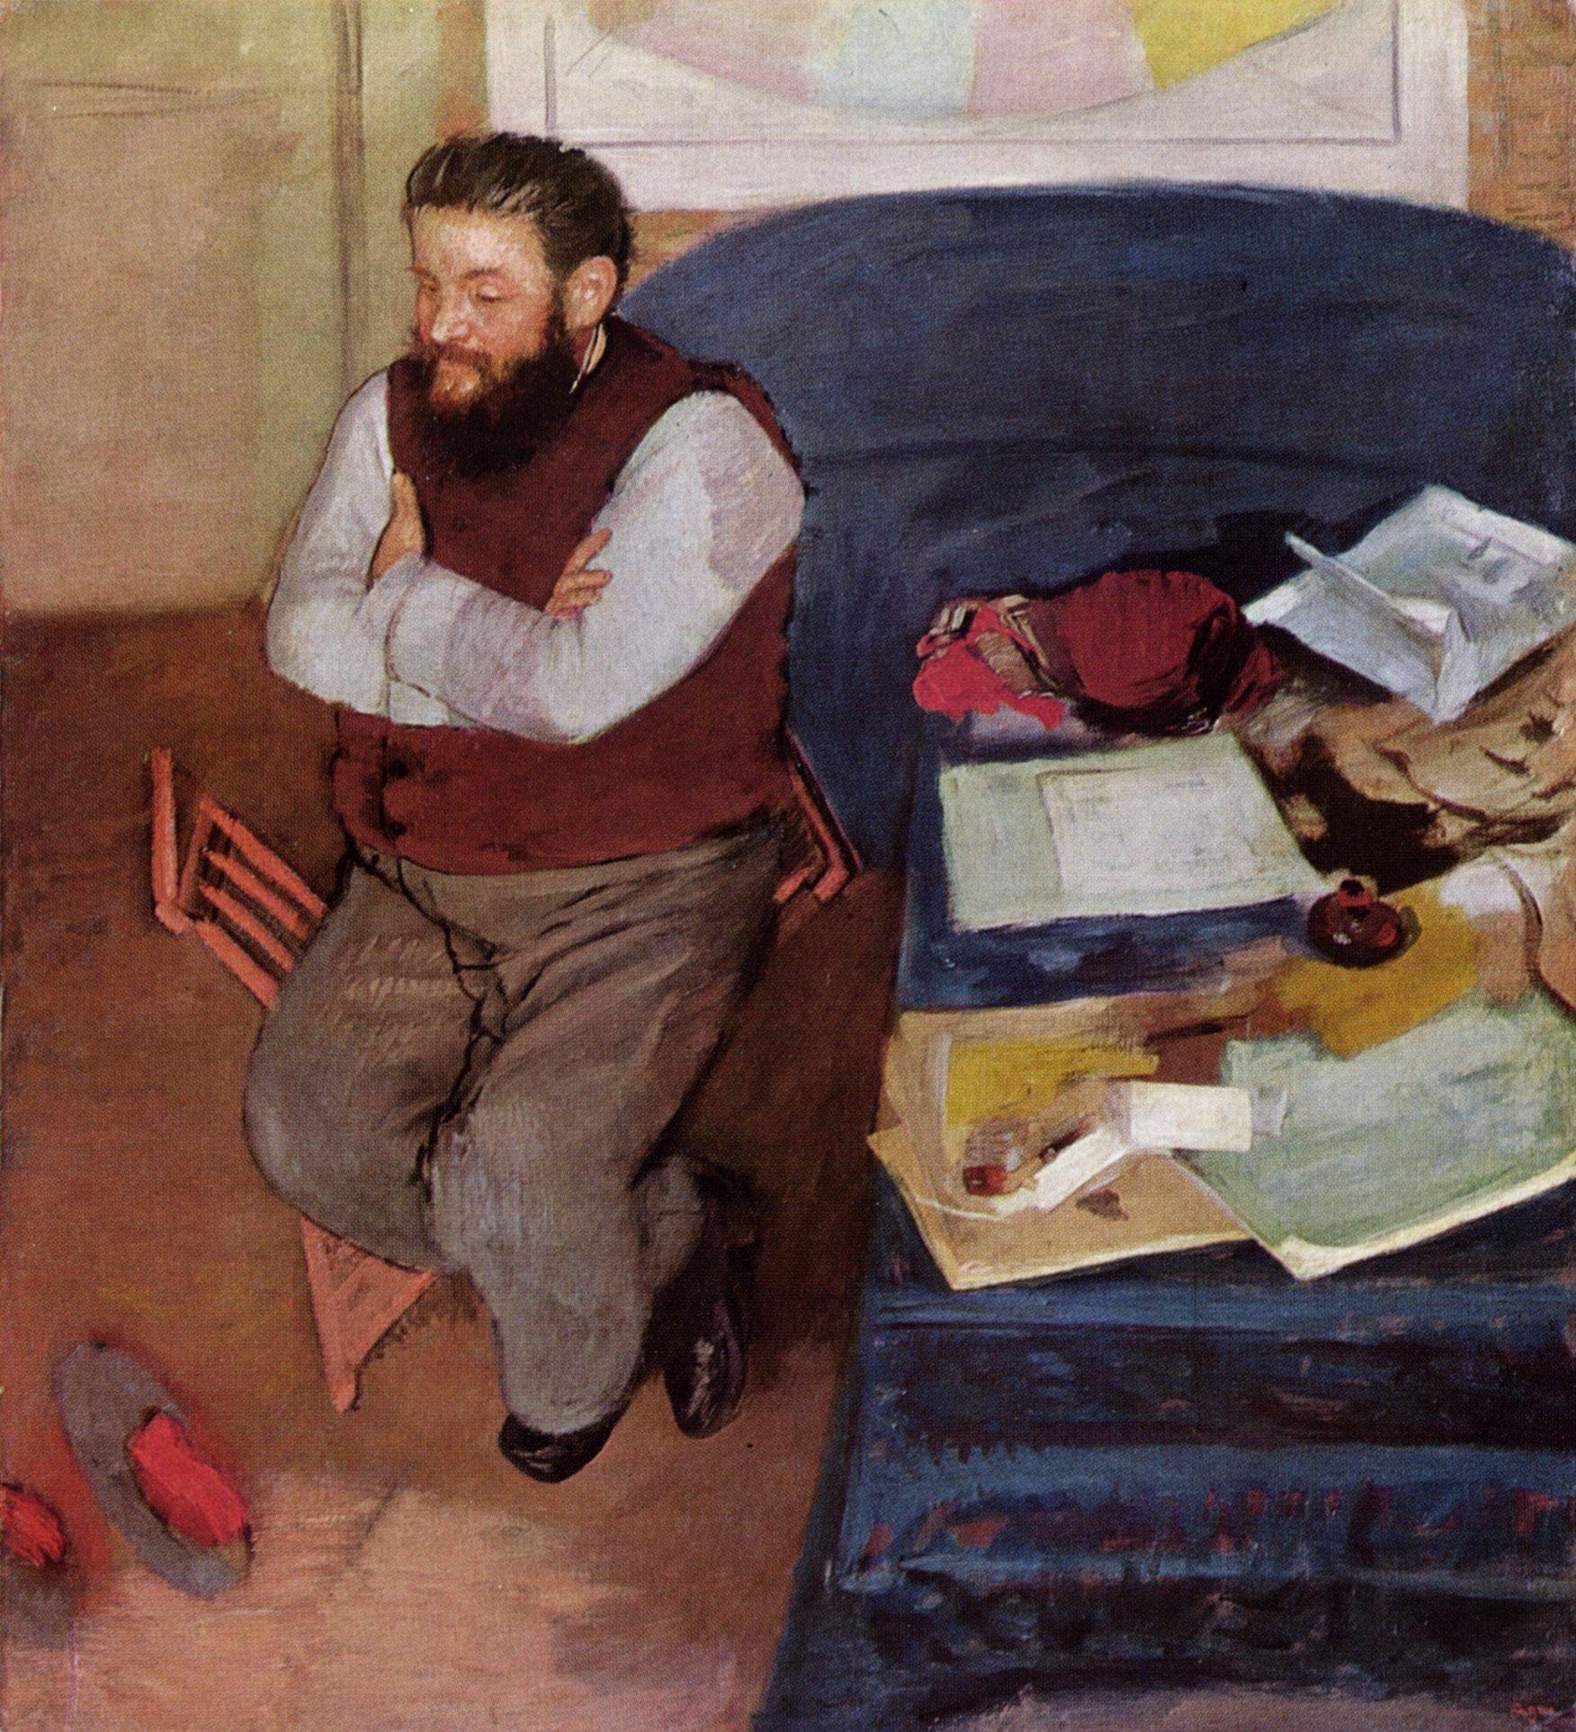 迭戈·马尔泰利 by 埃德加 德加 - 1879 - 110.40 x 99.80 cm 